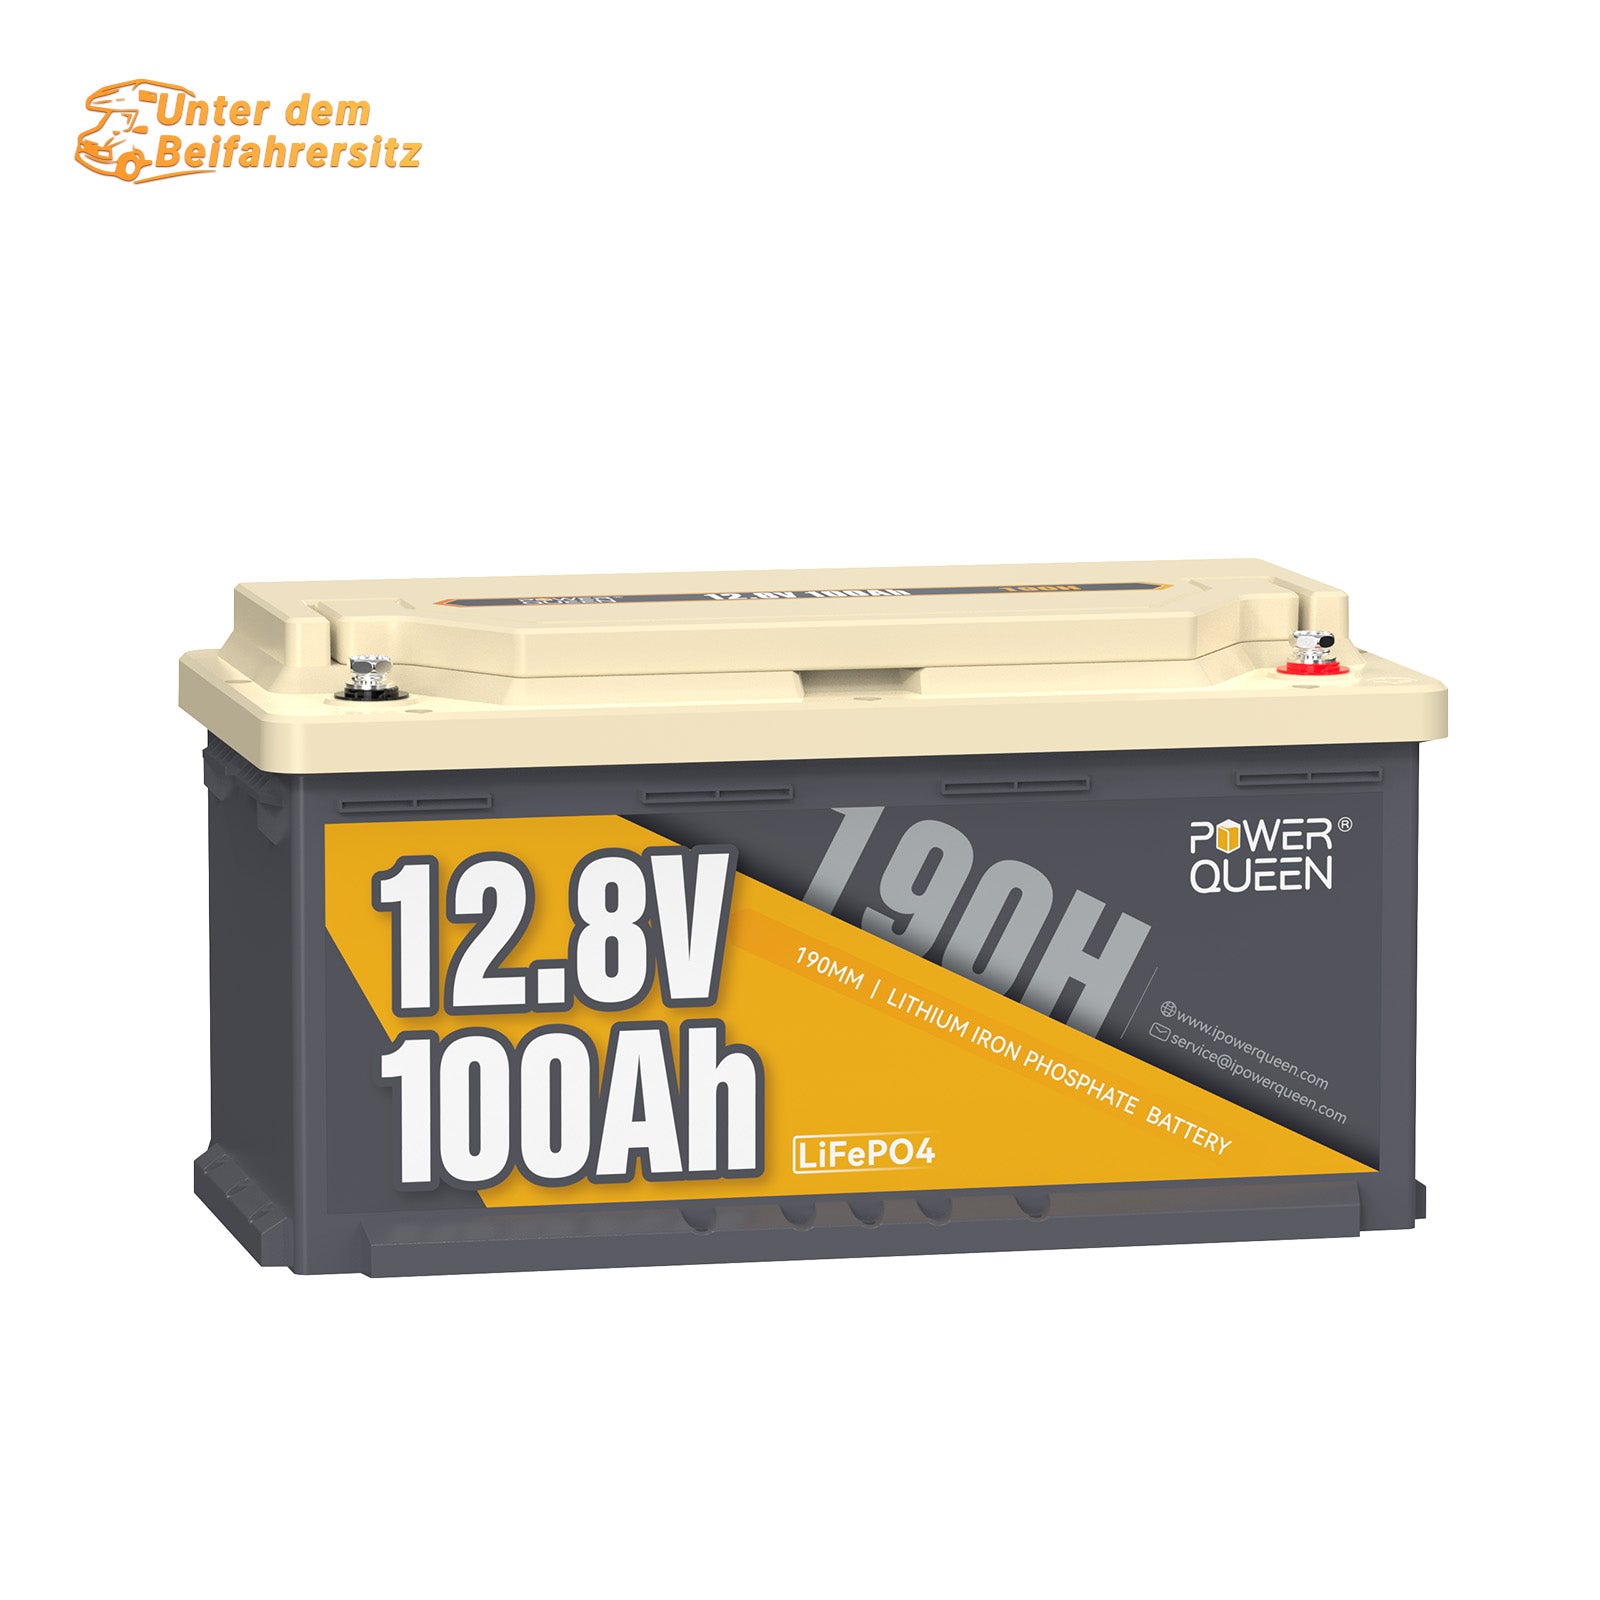 【0% IVA】Batteria Power Queen 12,8 V 100 Ah 190 H LiFePO4 per camper, sistema solare